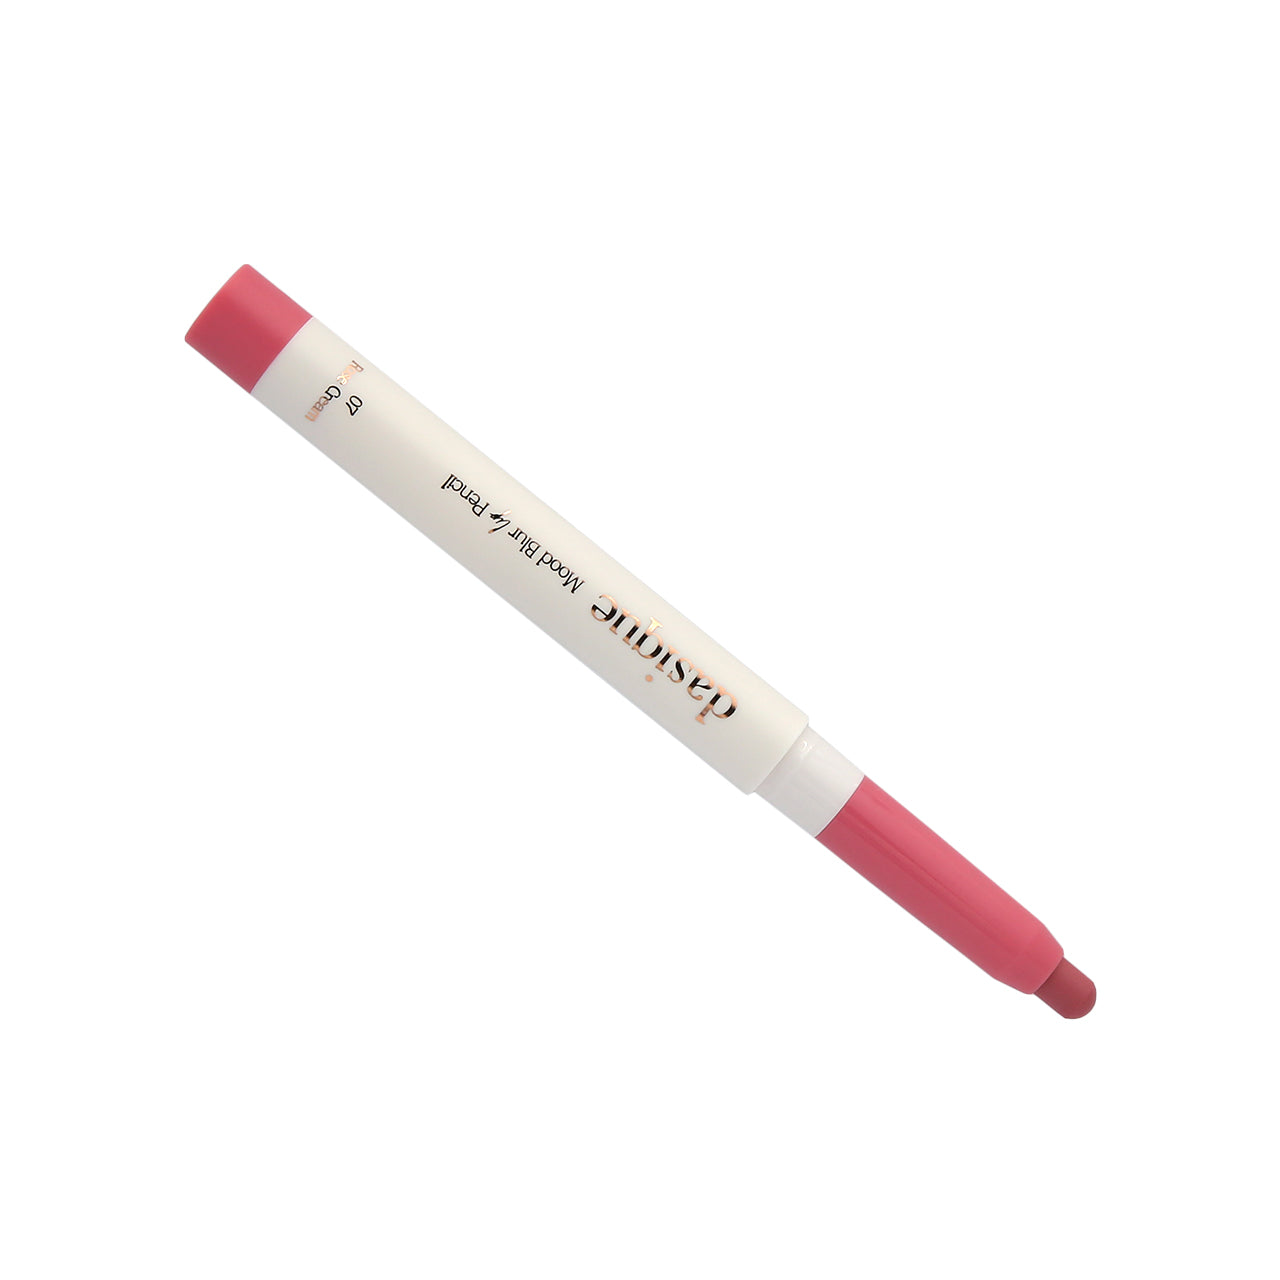 Dasique Mood Blur Lip Pencil (#07 Rose Cream) 0.9g